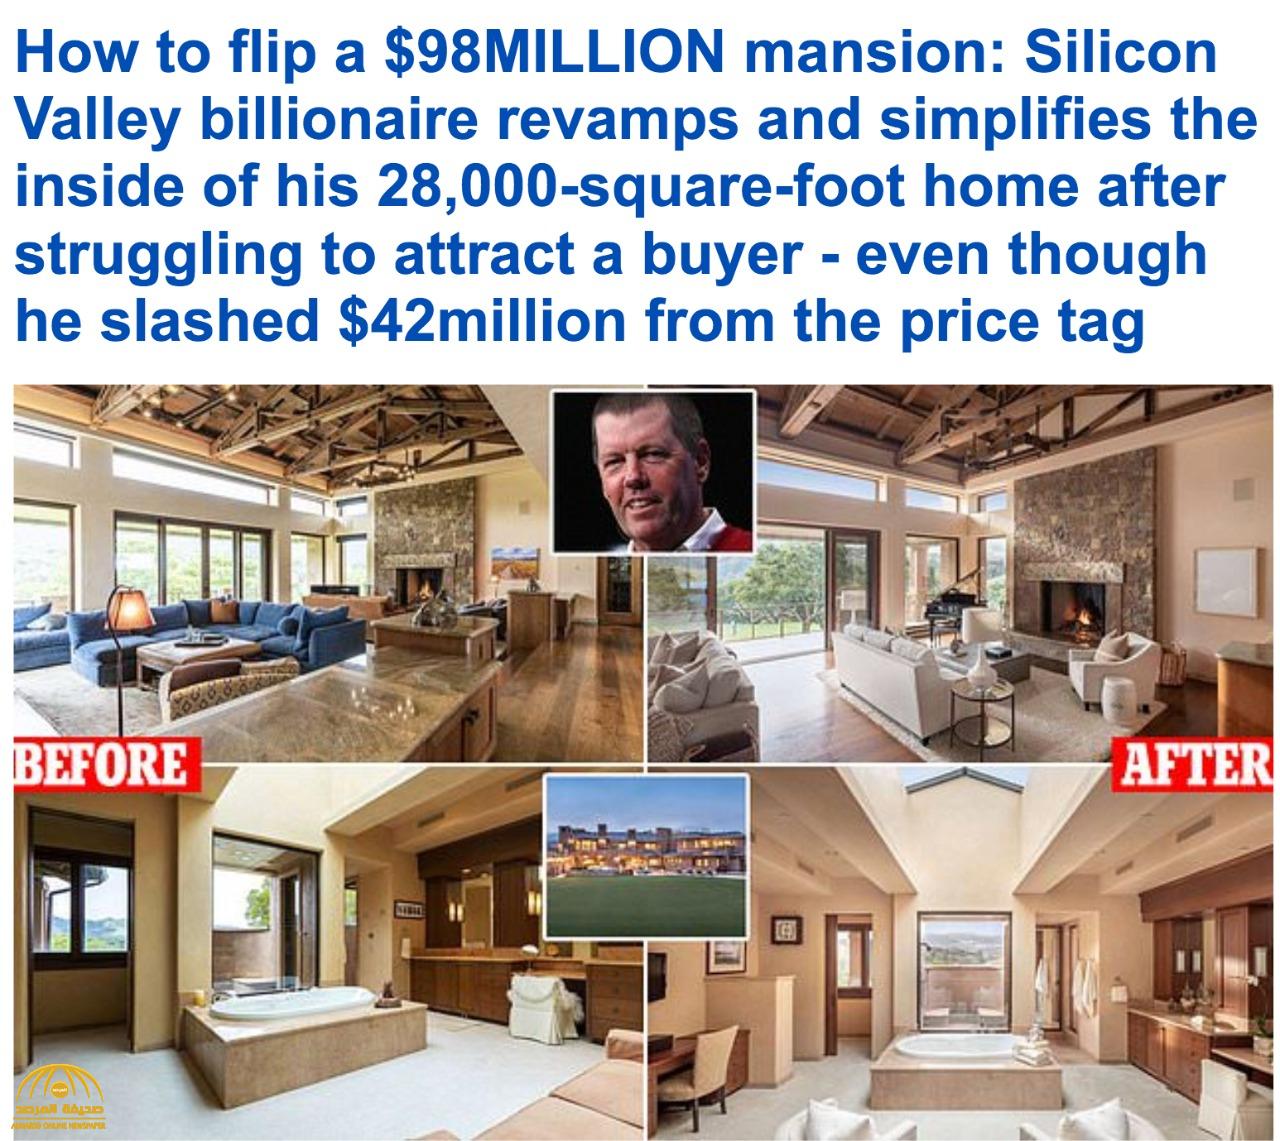 "بعد فشل تسويقه بـ ٩٨ مليون دولار".. بالصور : طرح قصر ضخم في أمريكا للبيع بهذا المبلغ !